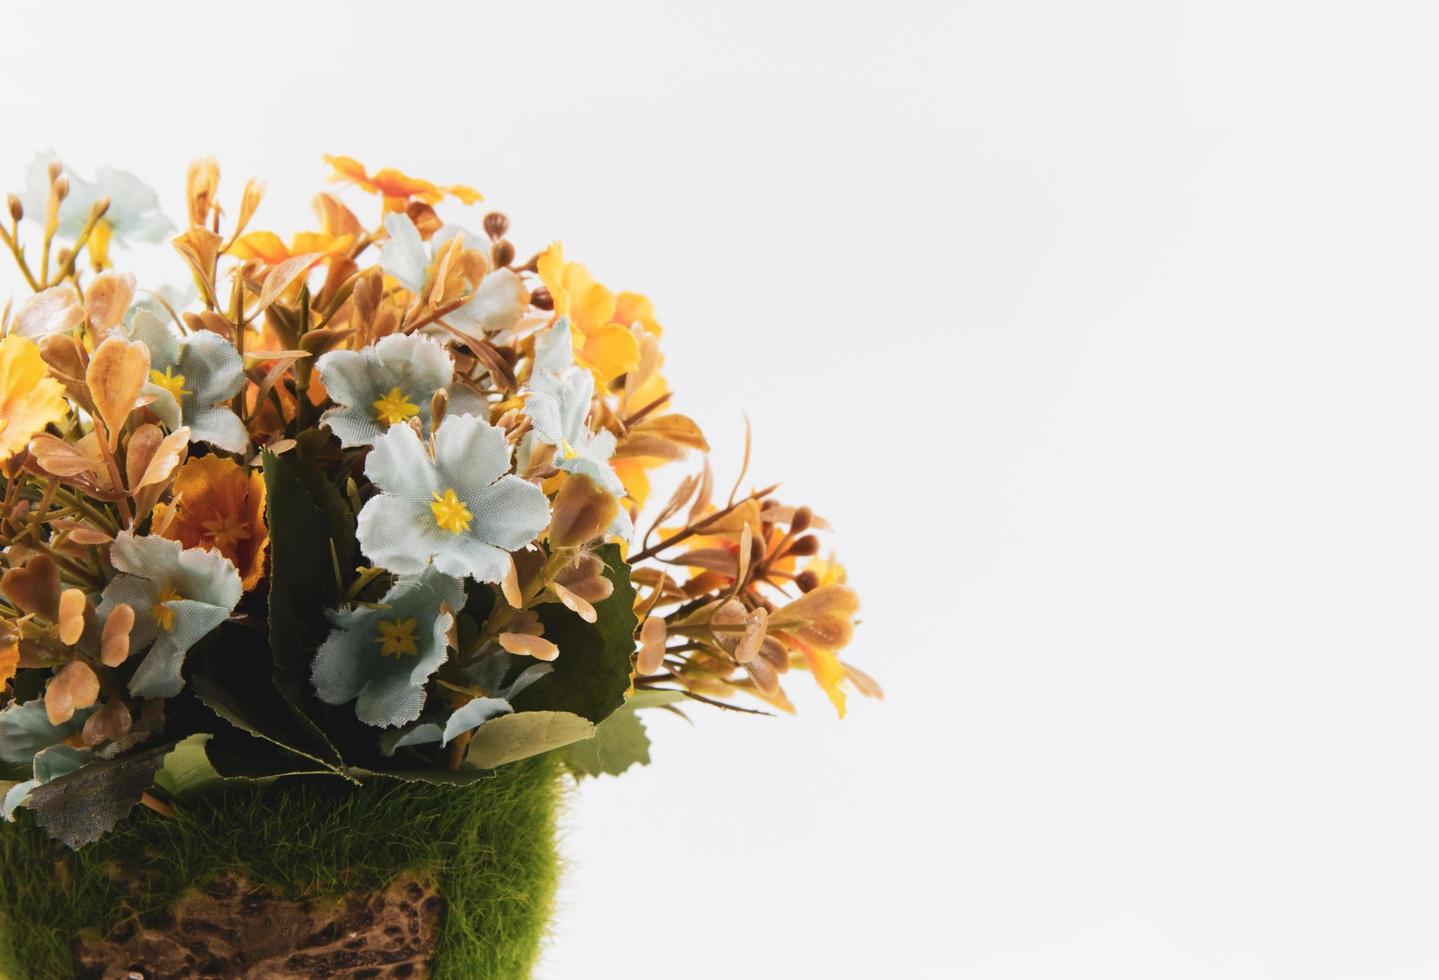 Artificial flower bouquet decoration, copy space background photo